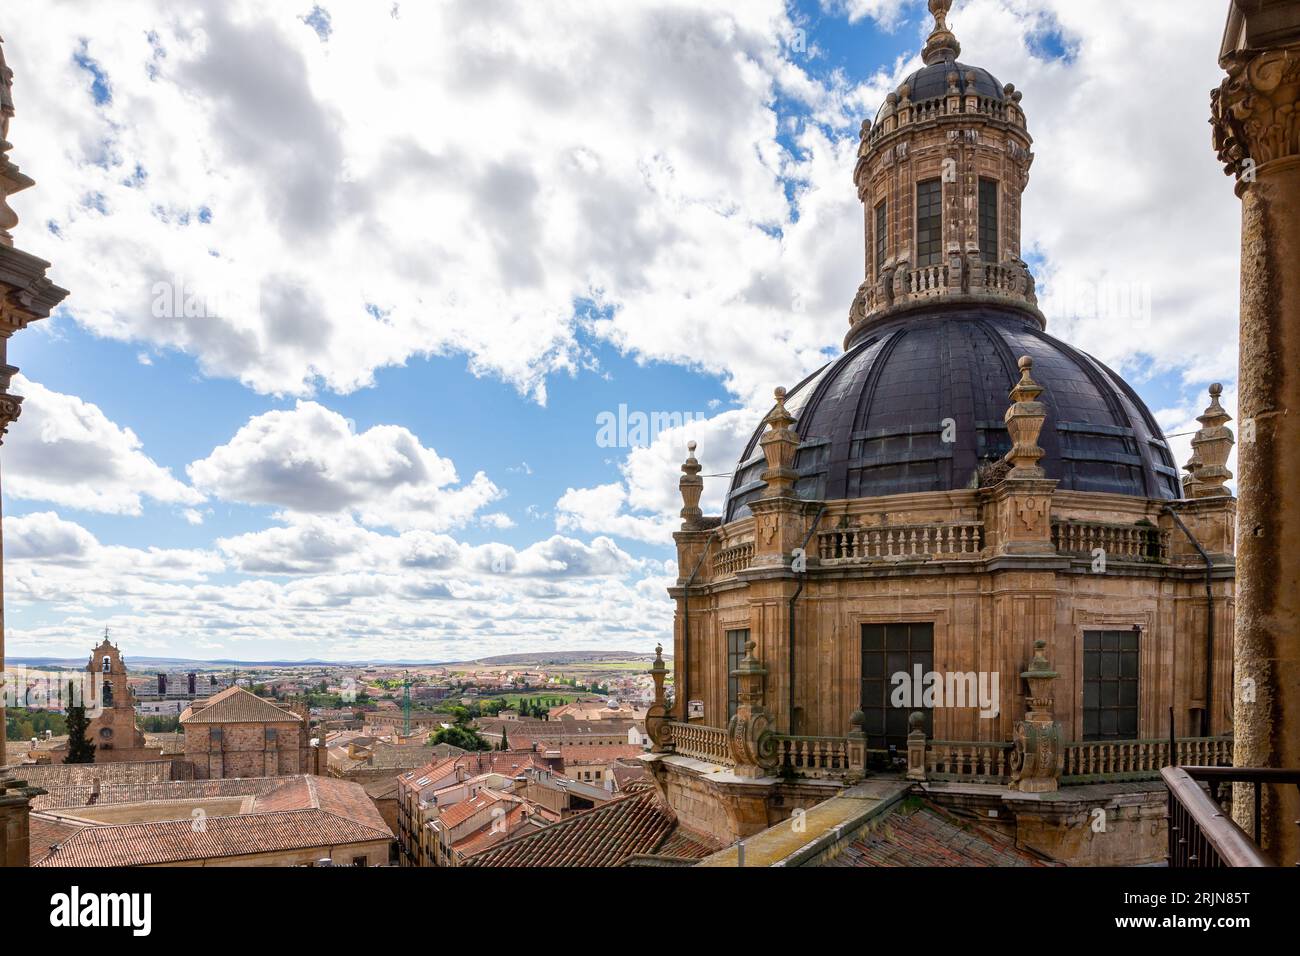 Campanile in stile barocco e cupola dell'edificio la Clerecía a Salamanca, Spagna, con facciata decorativa scolpita, paesaggio urbano di Salamanca sullo sfondo. Foto Stock